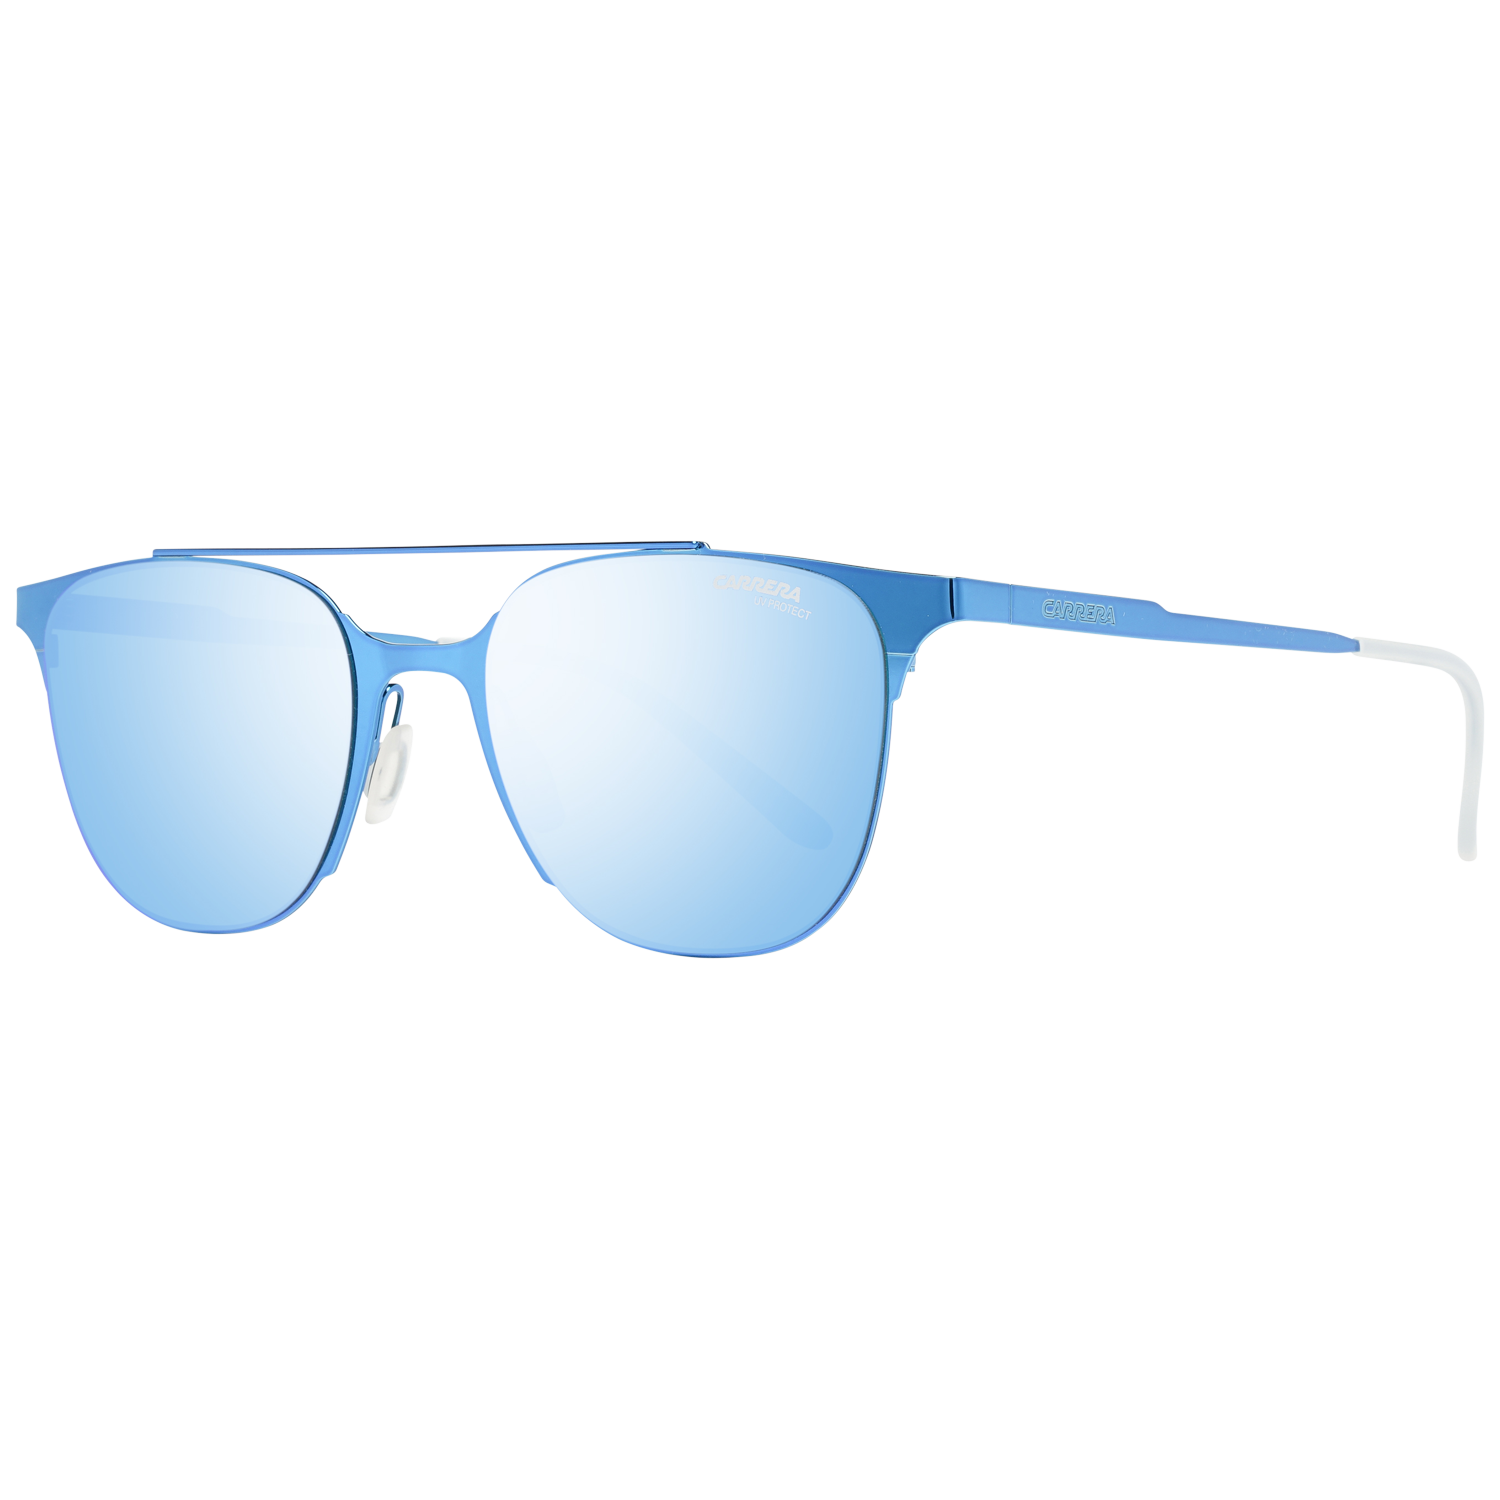 Carrera Sunglasses CA116/S 1O9/Z0 51